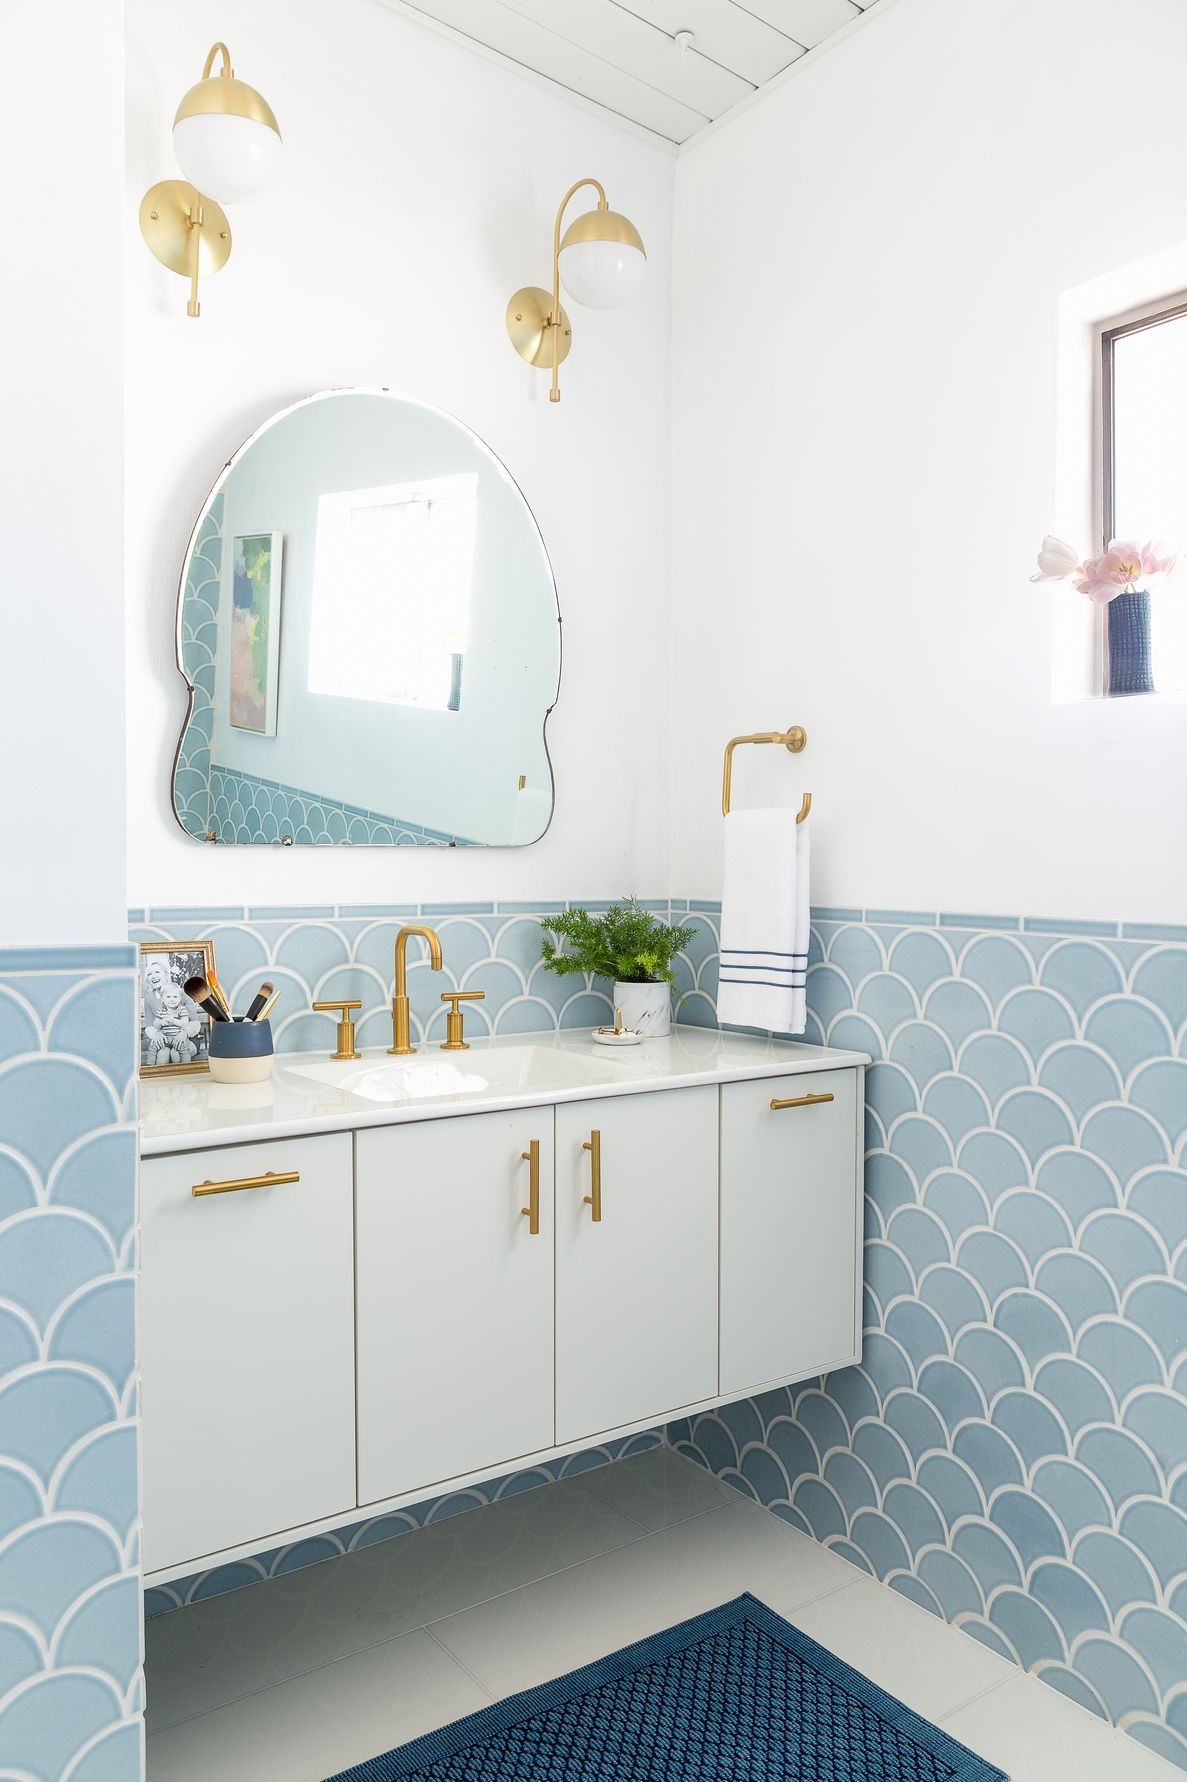 Gạch ốp lát xanh lam nhạt, đặc biệt là kiểu gạch vảy cá, là ý tưởng trang trí tuyệt vời cho phòng tắm 'khiêm tốn'.